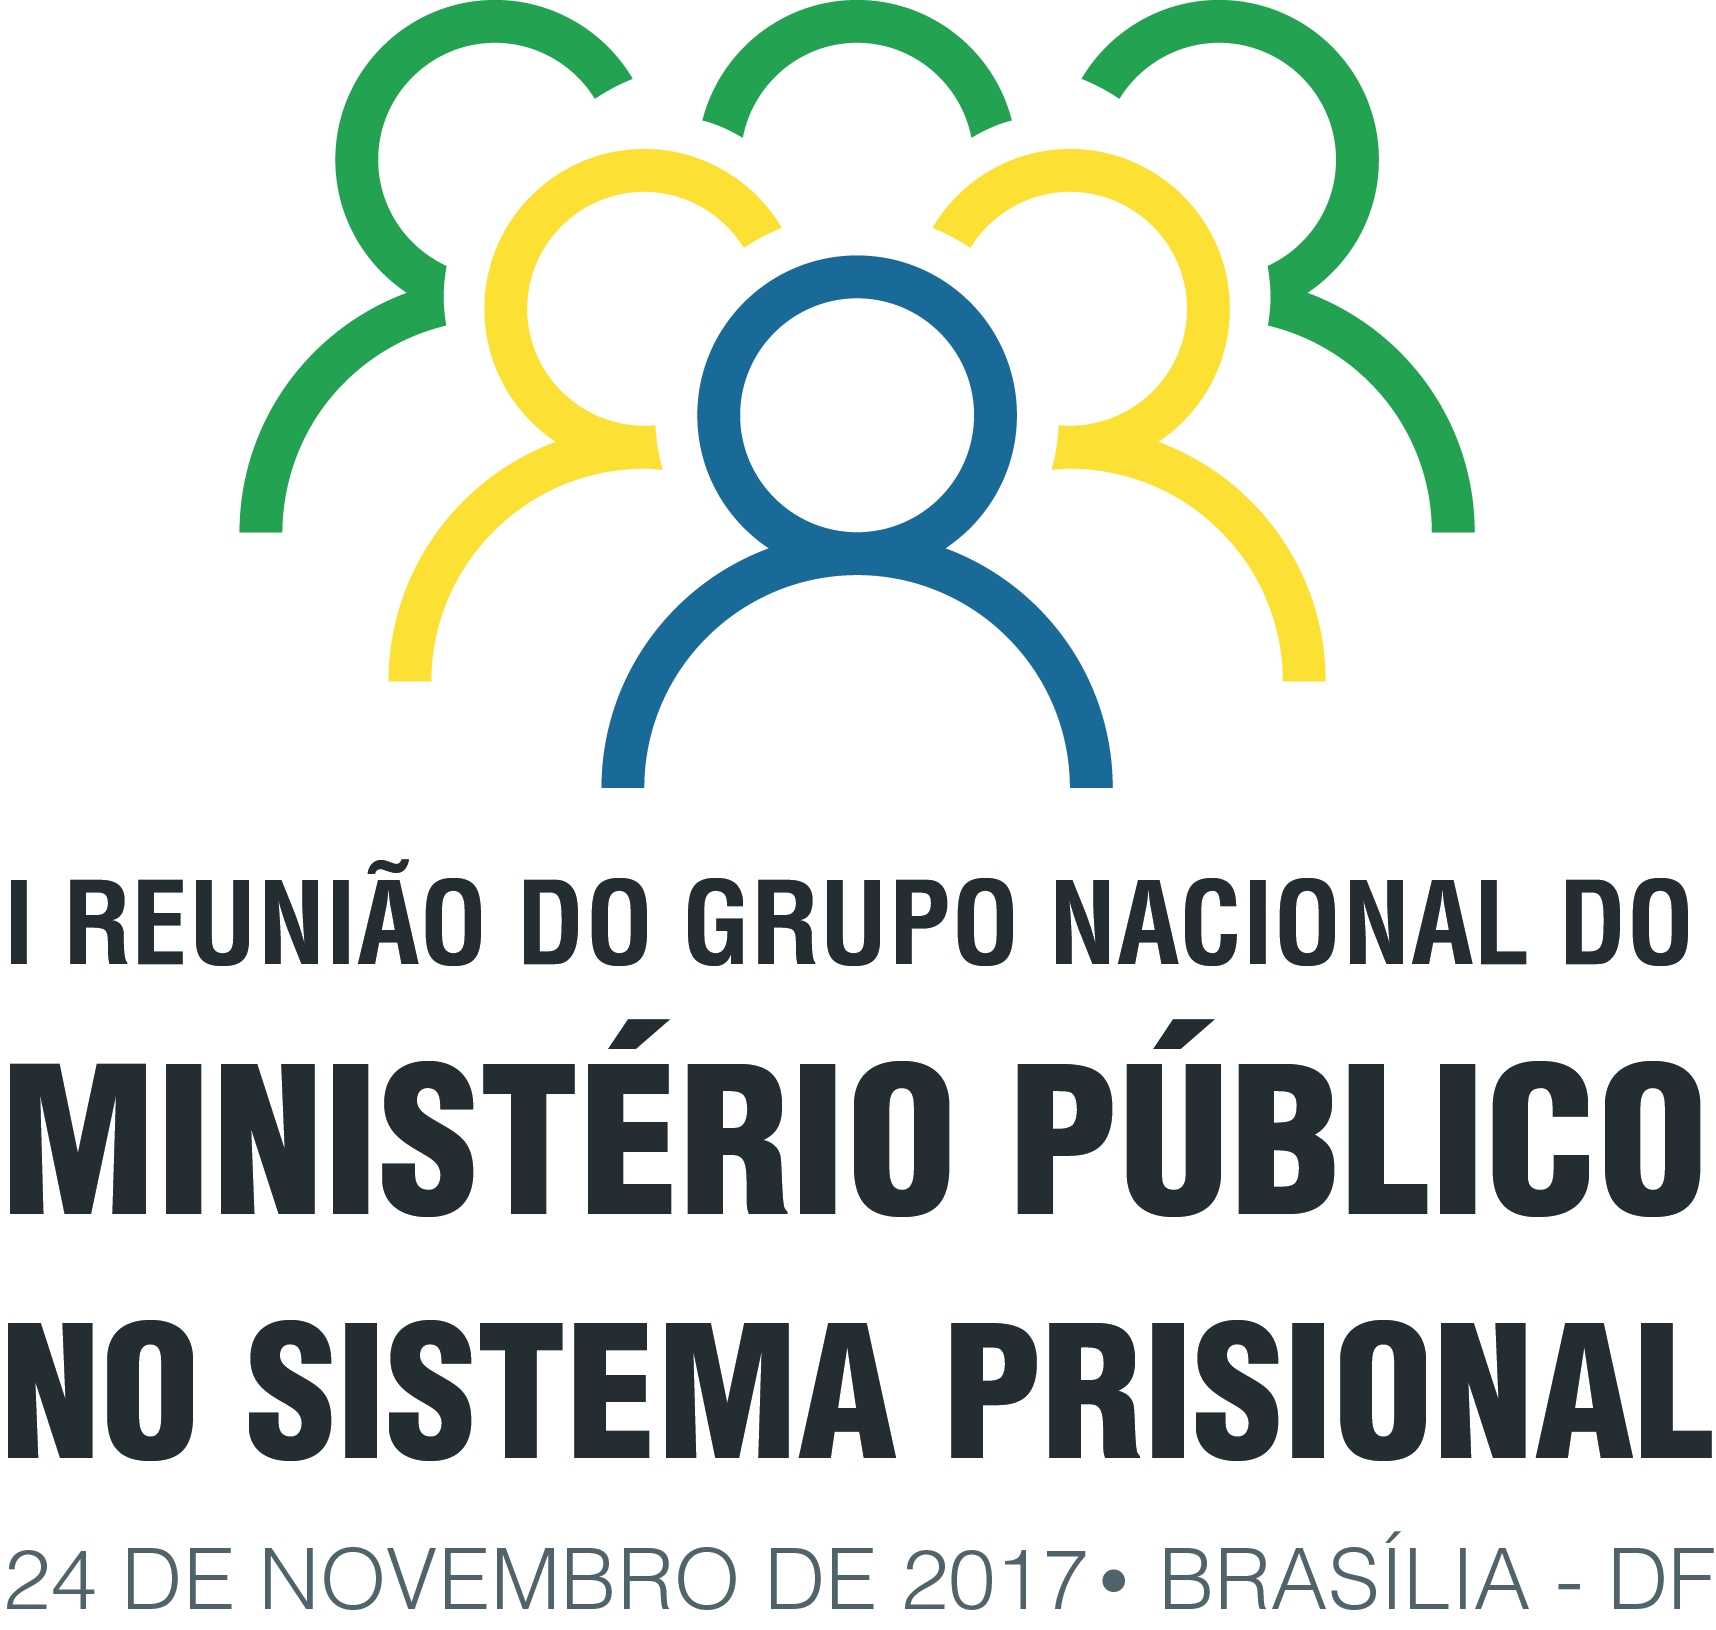 Reunião do Grupo Nacional do Ministério Público no Sistema Prisional ocorre em Brasília